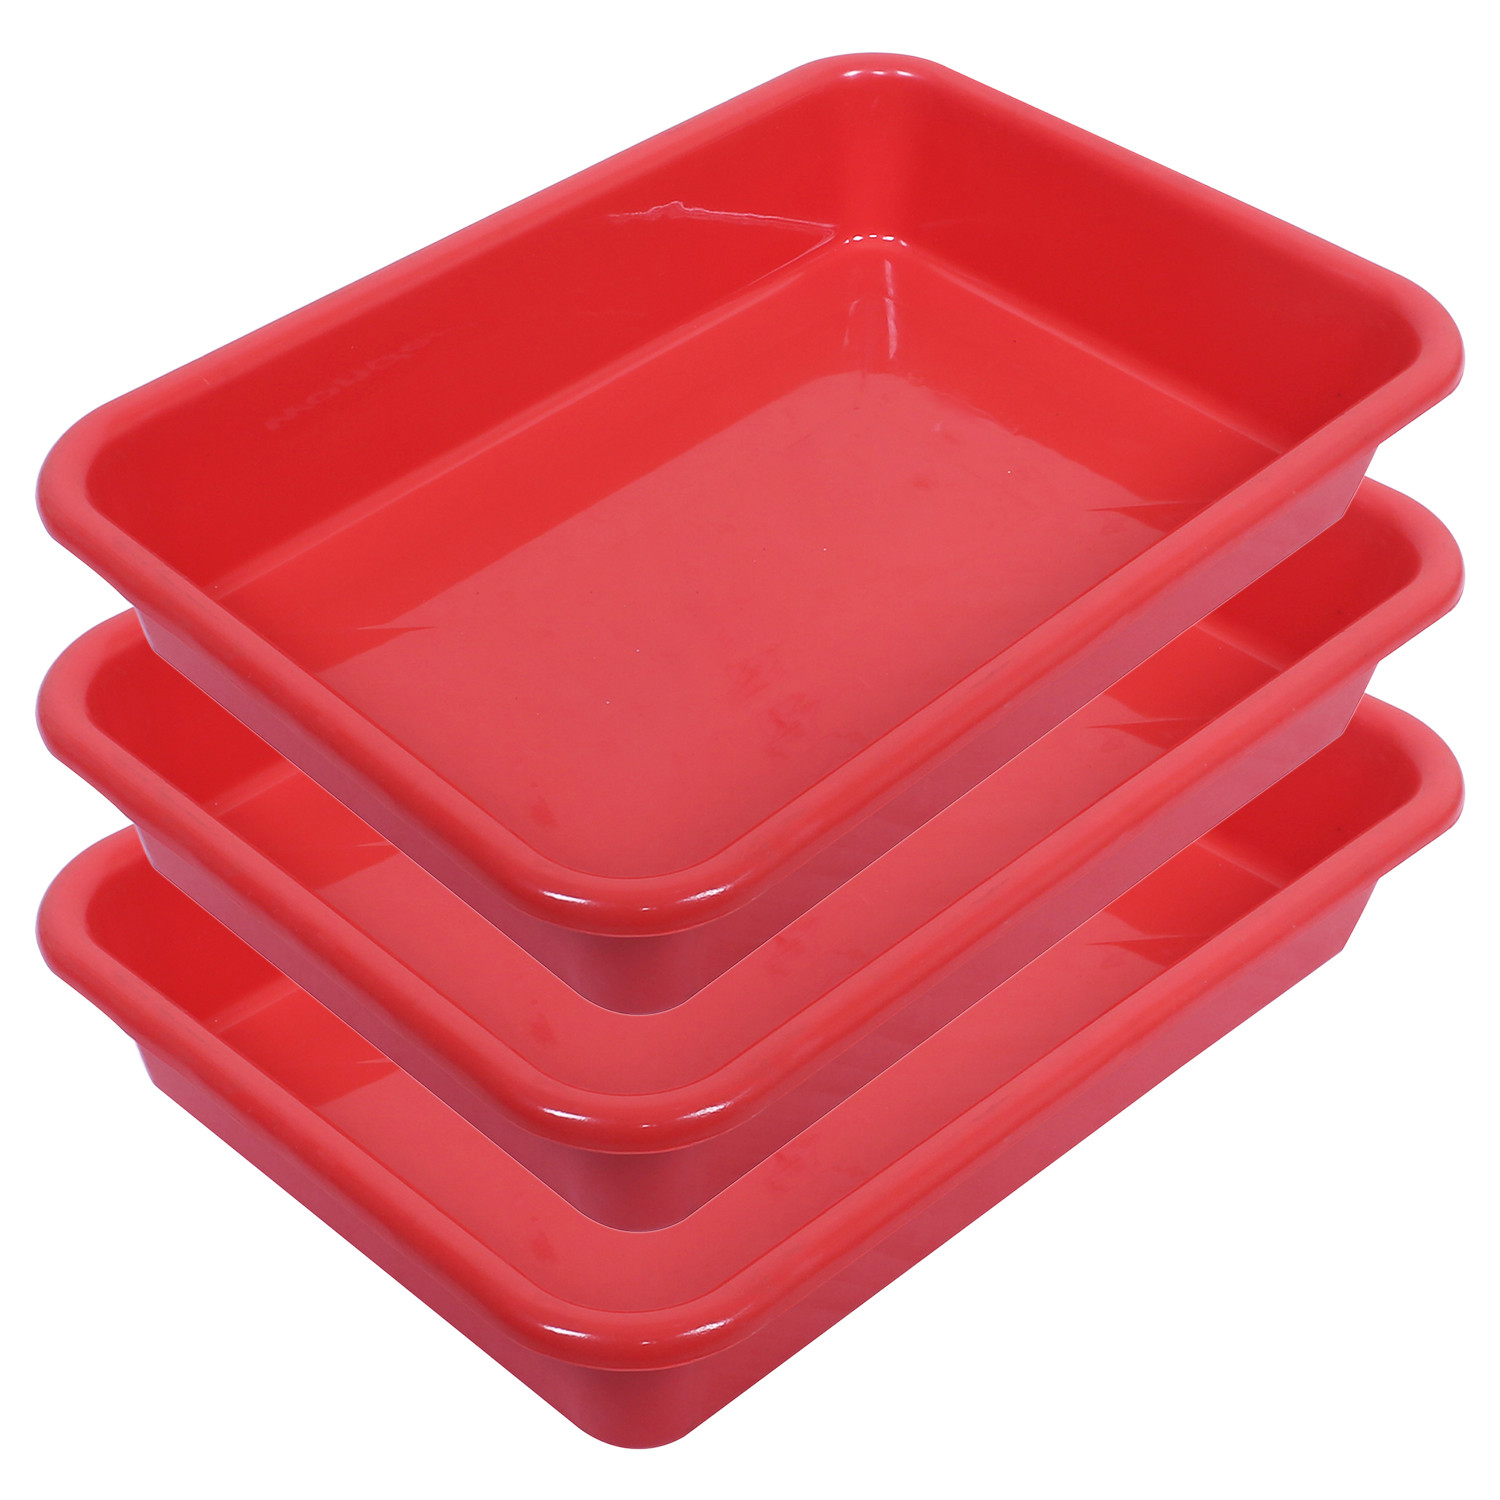 Kuber Industries Storage Tray|Versatile Plastic Storage Organizer|Rectangular Tray for Kitchen Storage|Storage Tray for office|Exel Tray 555 (Red)